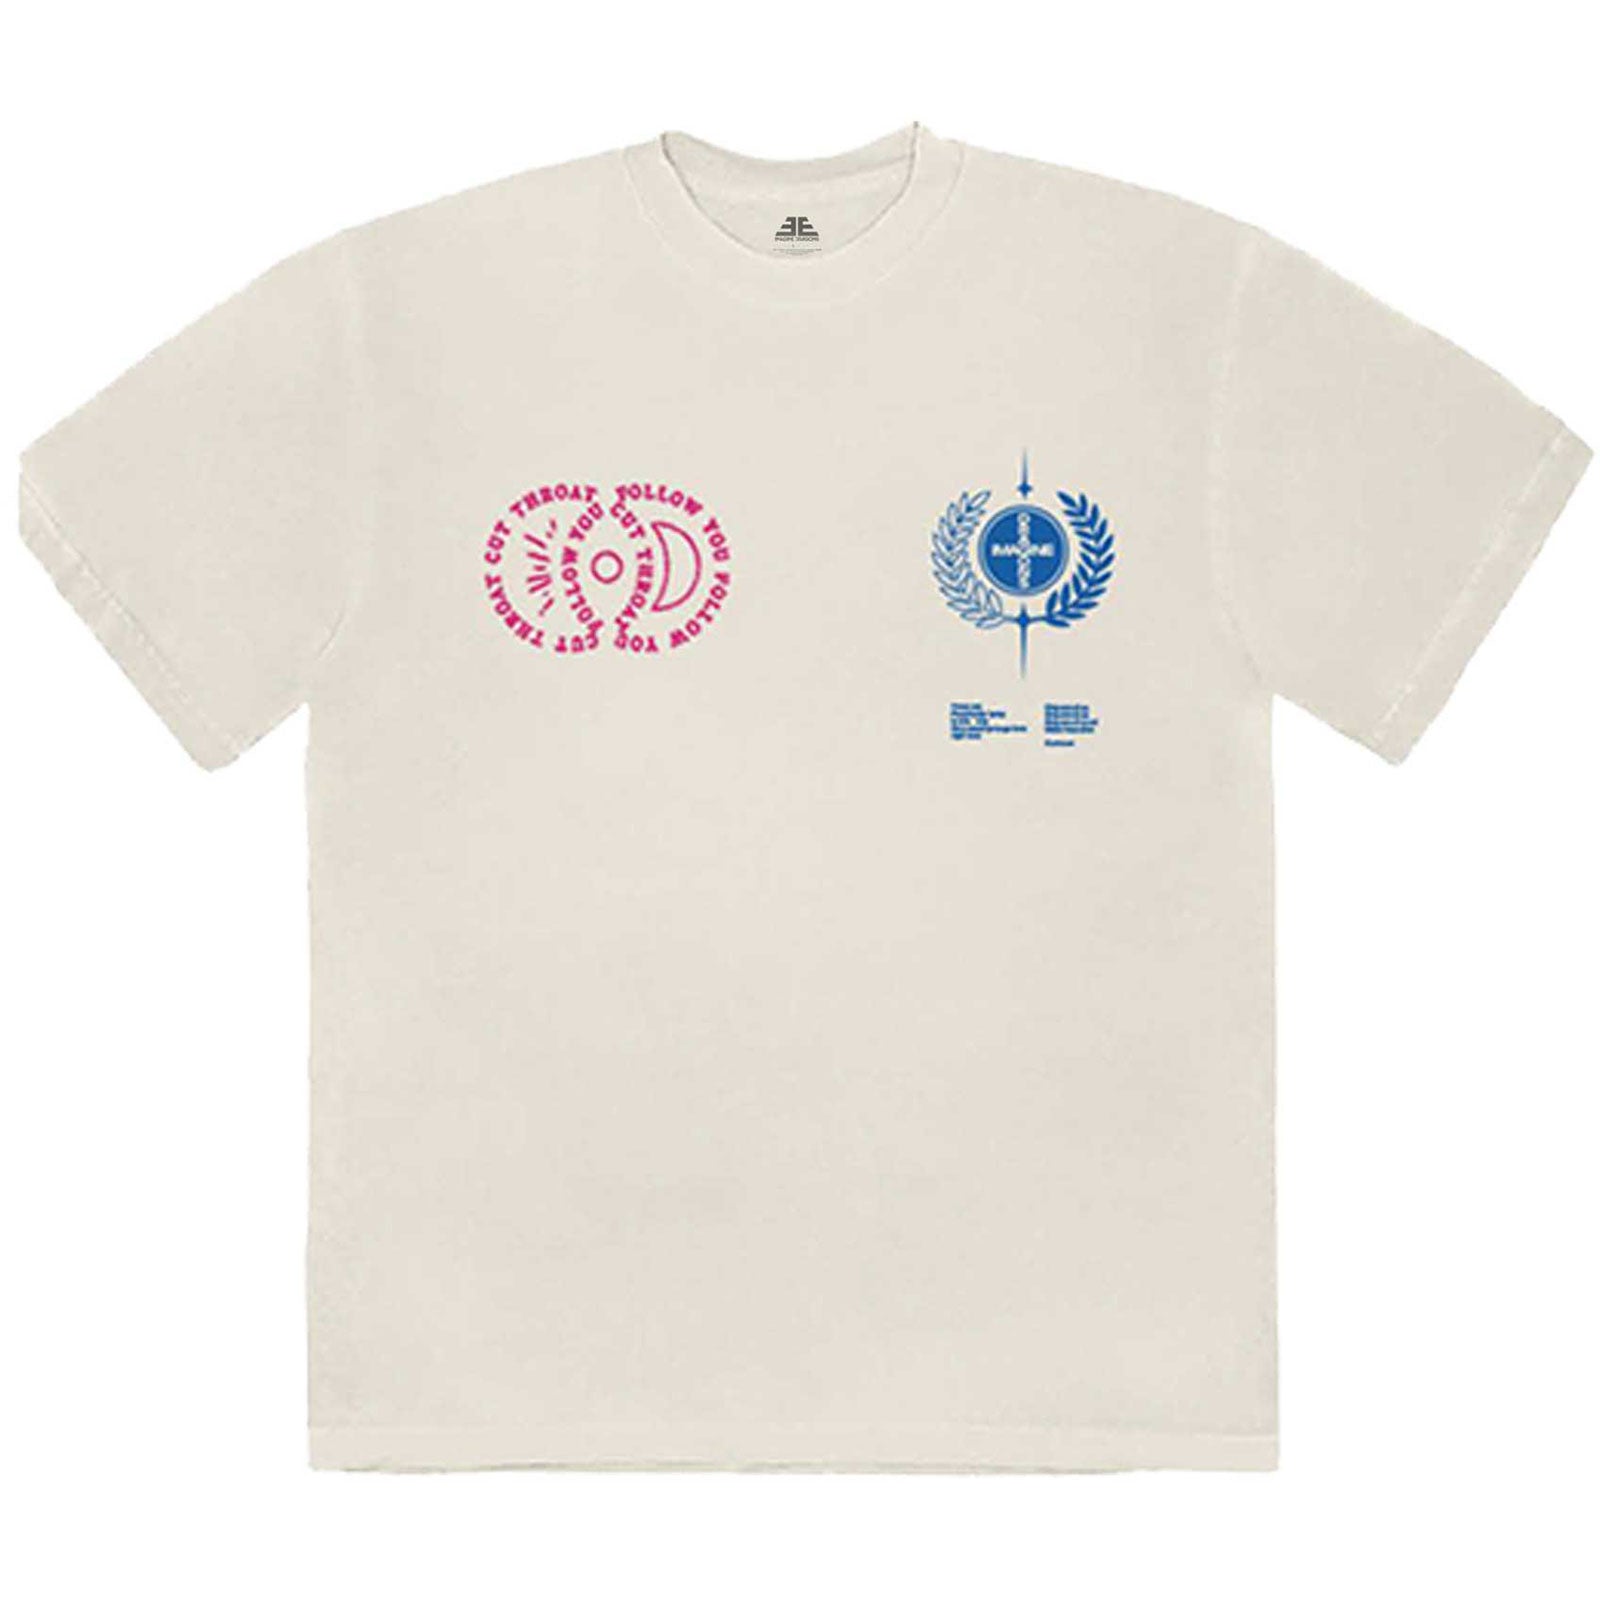 Imagine Dragons T-Shirt – Liedtext (Rückendruck) – Natur, Unisex, offiziell lizenziertes Design